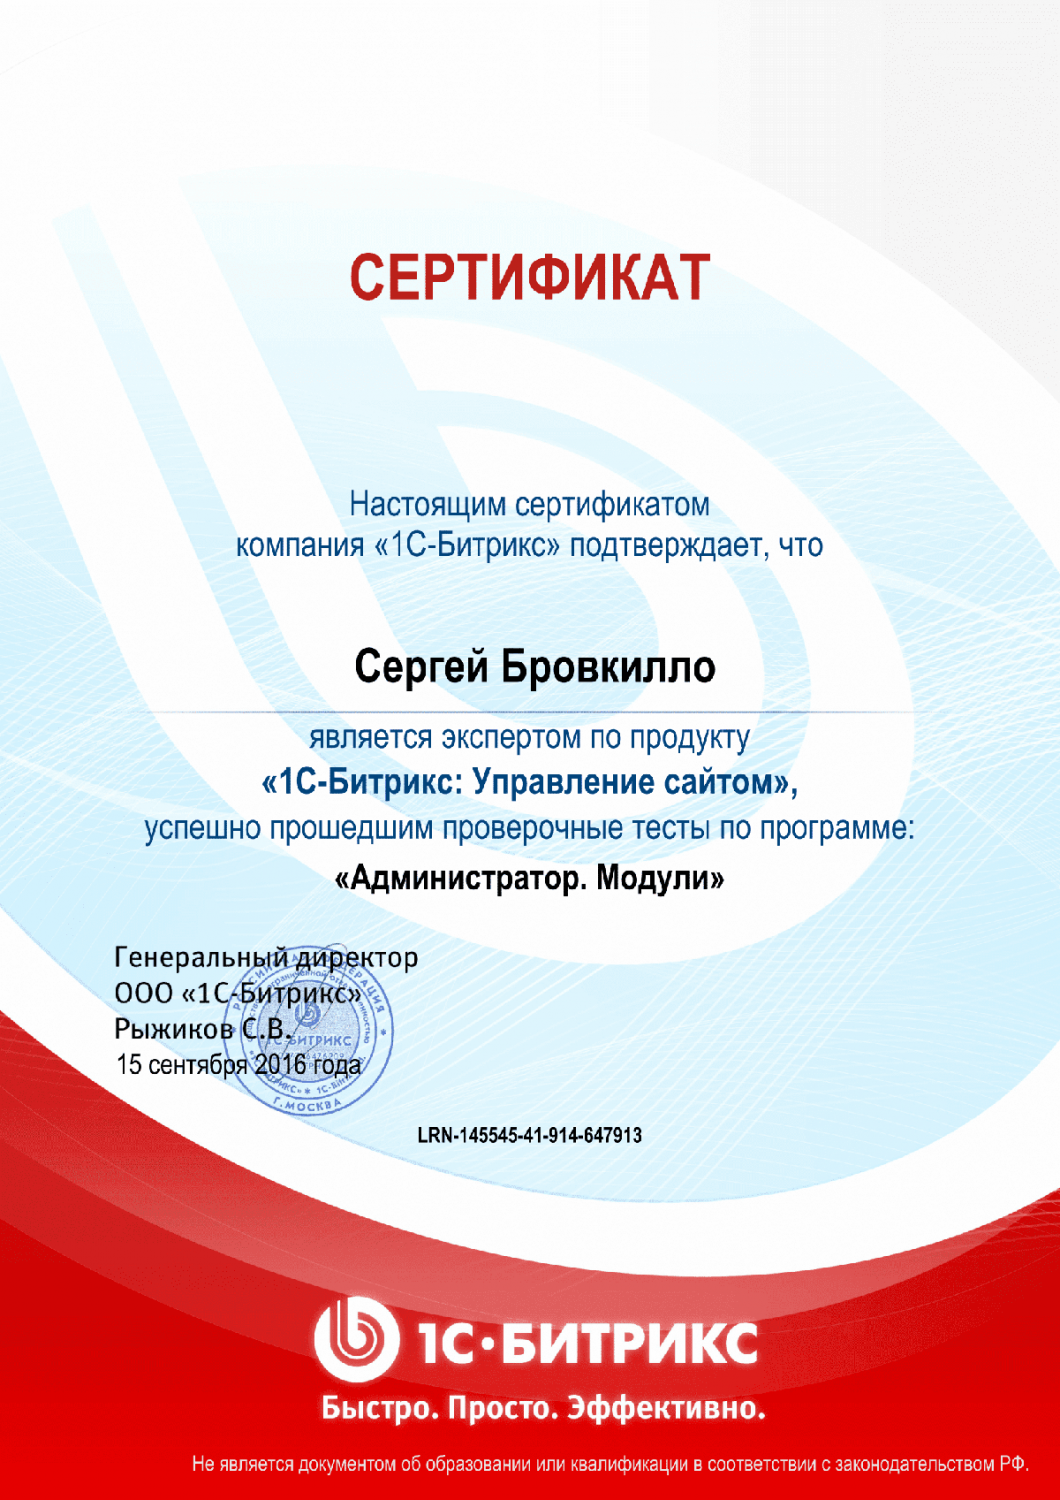 Сертификат эксперта по программе "Администратор. Модули" в Астрахани